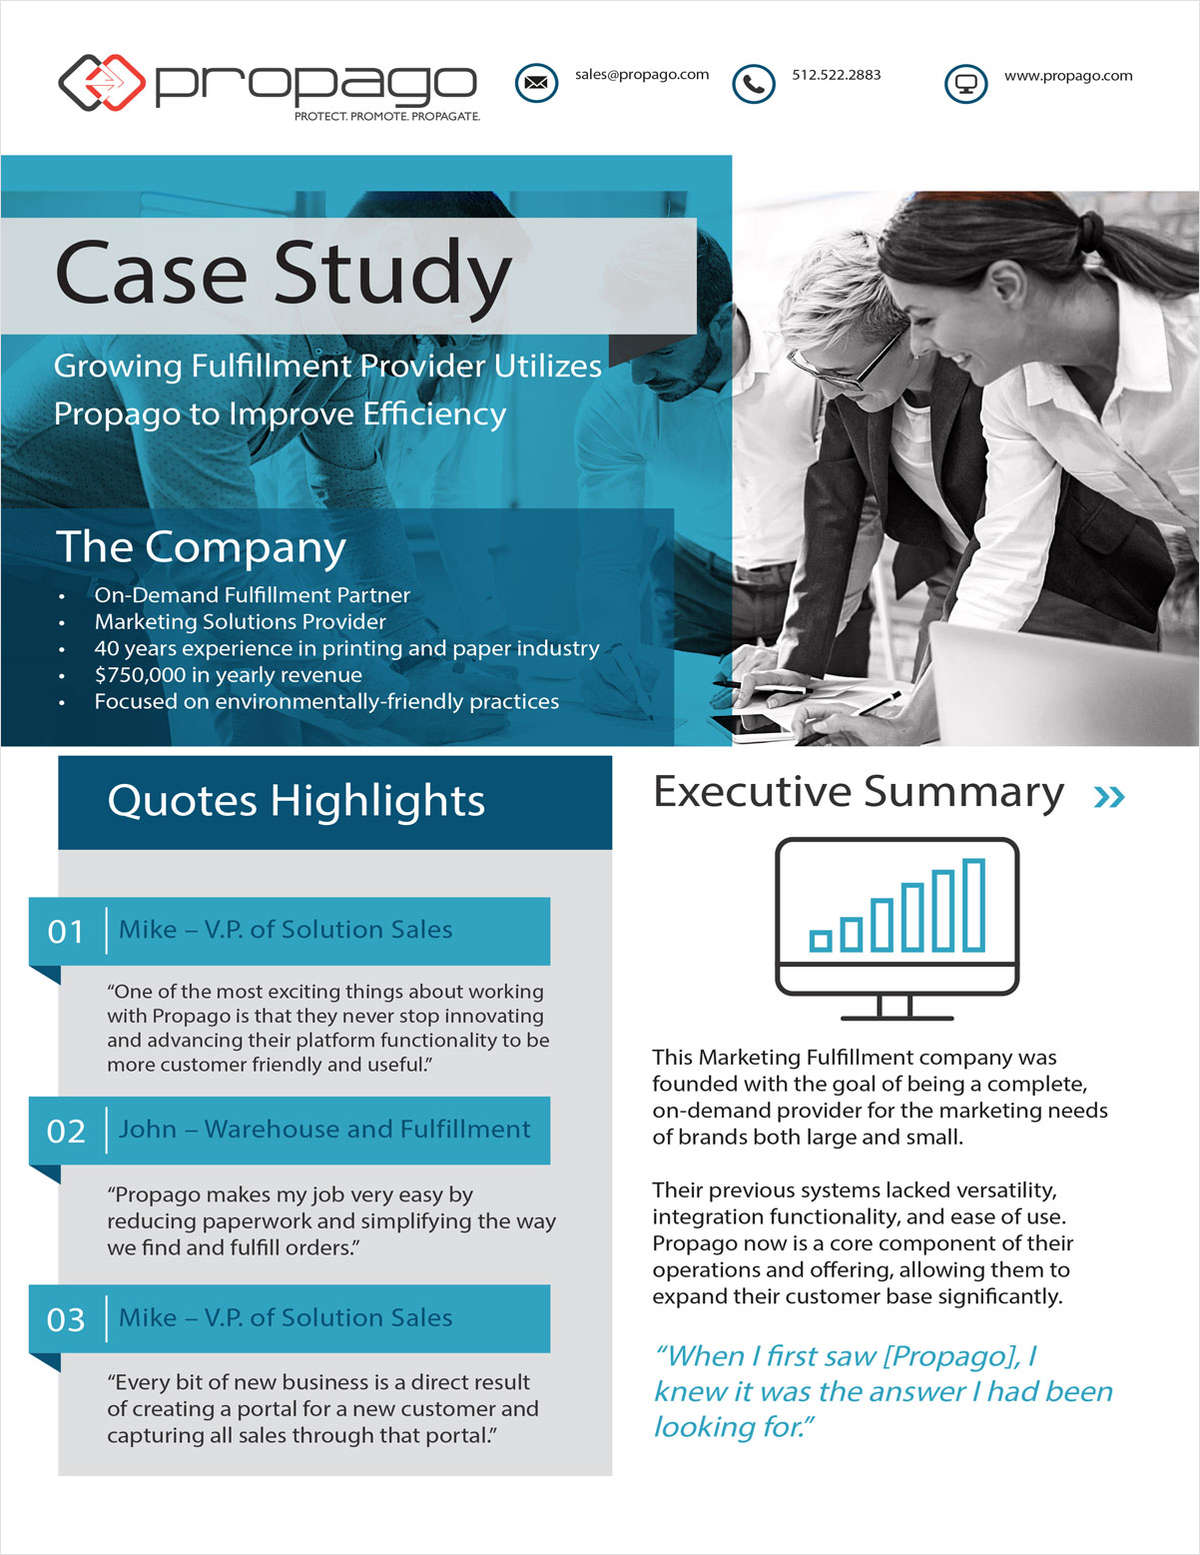 Case Study: Marketing Fulfillment Provider